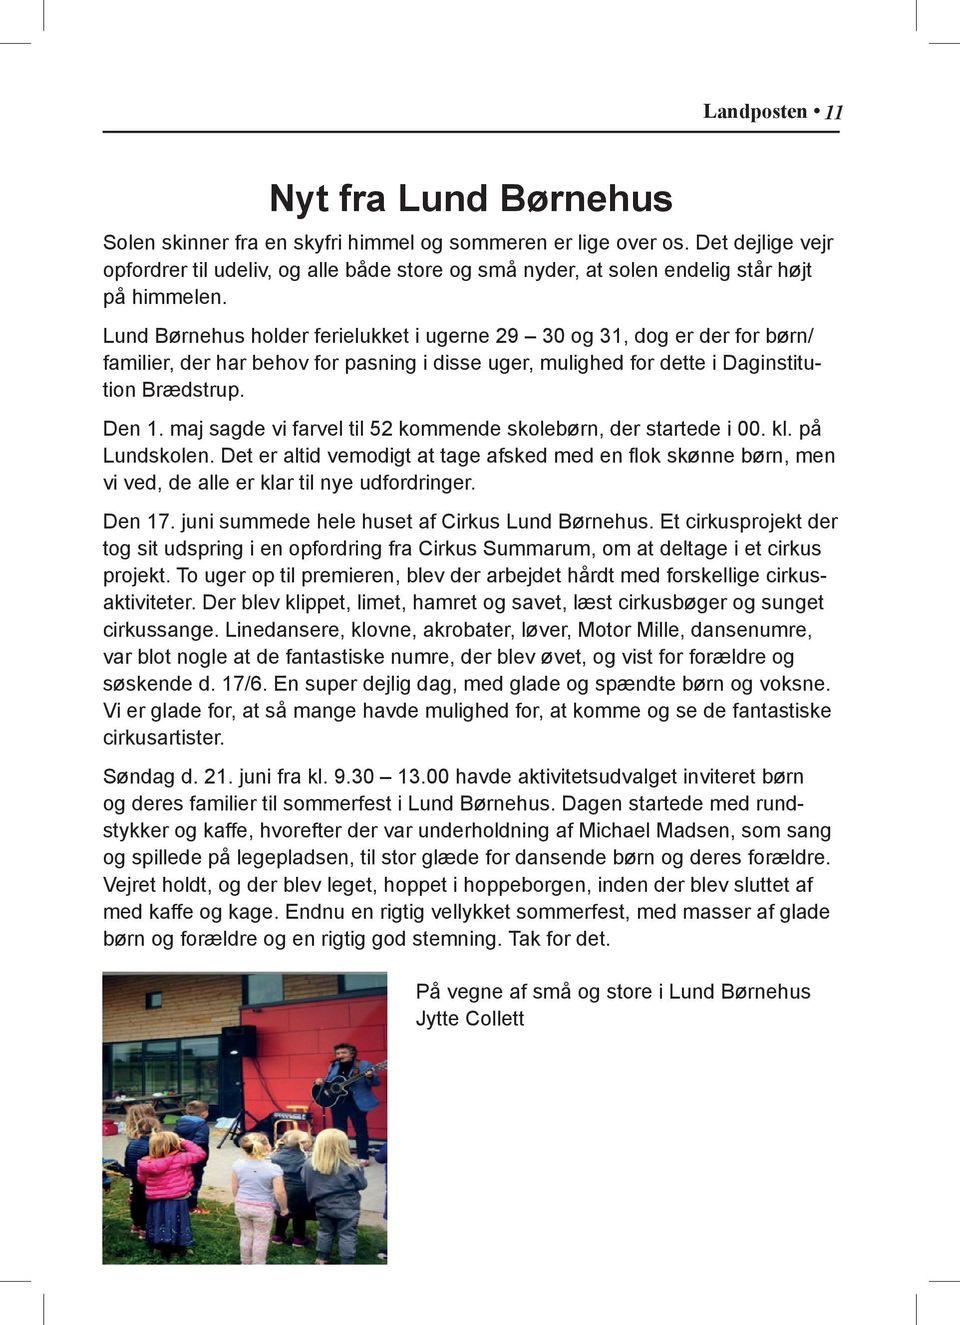 Lund Børnehus holder ferielukket i ugerne 29 30 og 31, dog er der for børn/ familier, der har behov for pasning i disse uger, mulighed for dette i Daginstitution Brædstrup. Den 1.